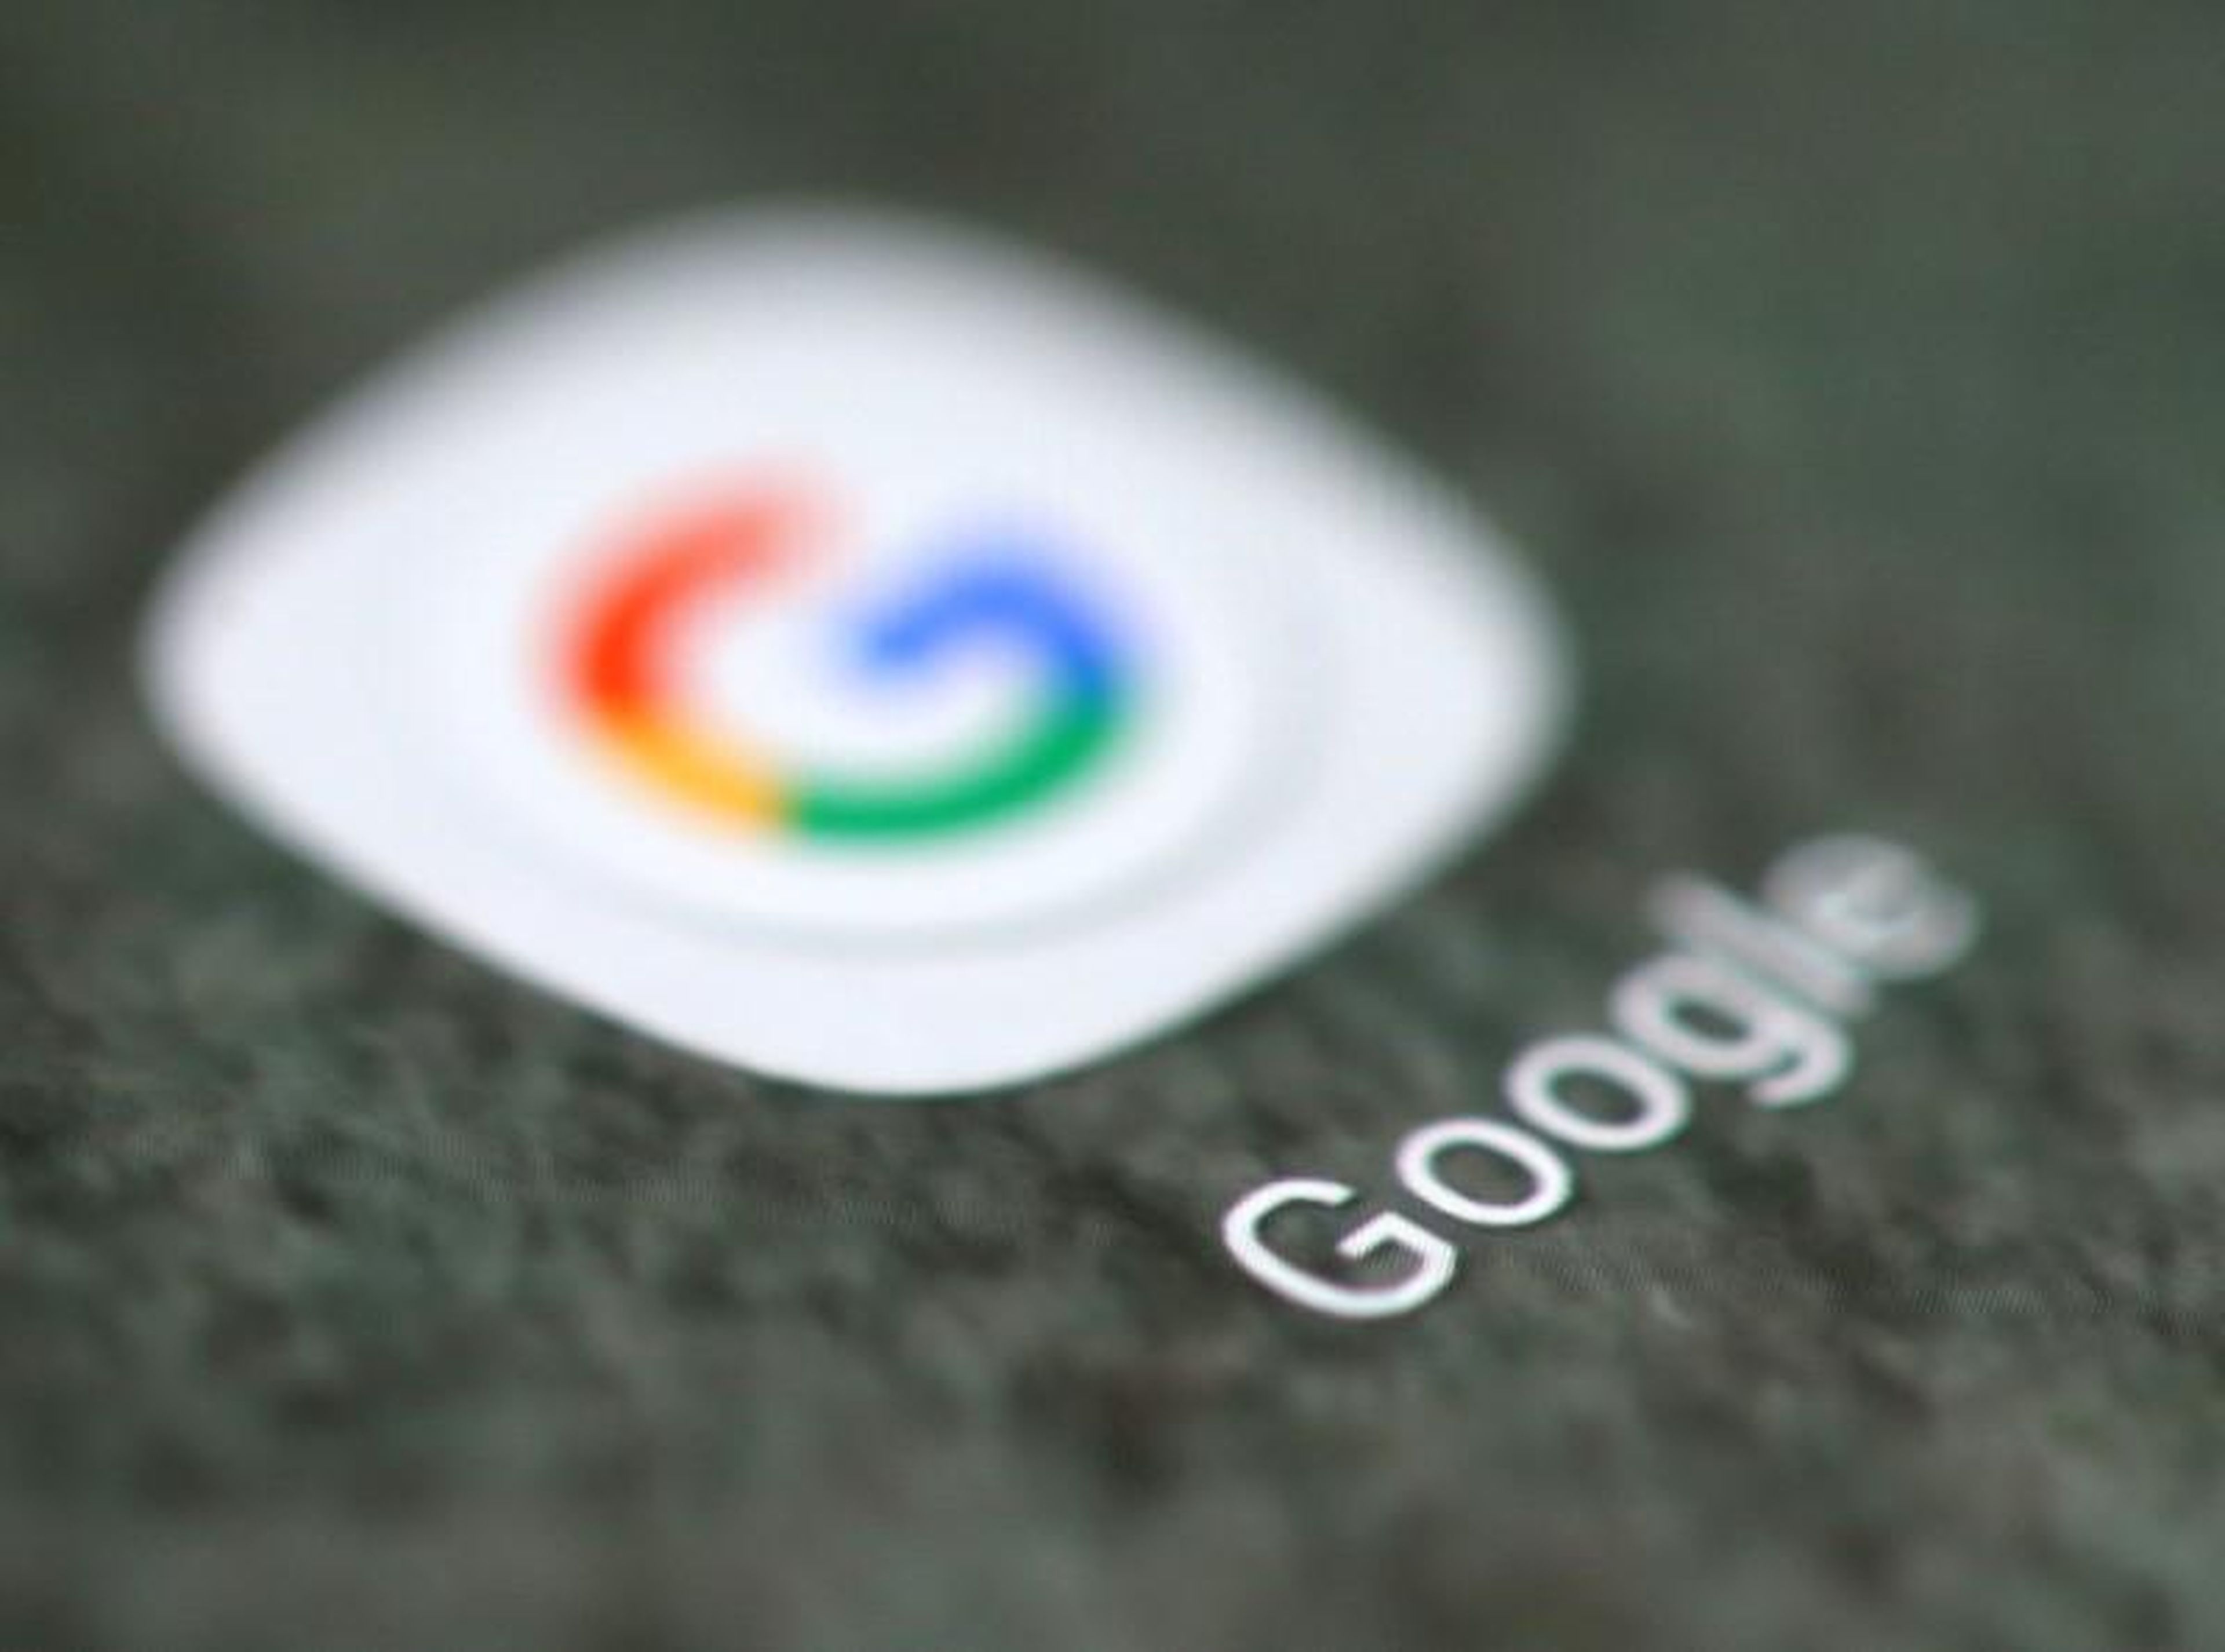 El logo de Google, en la pantalla de un teléfono móvil.